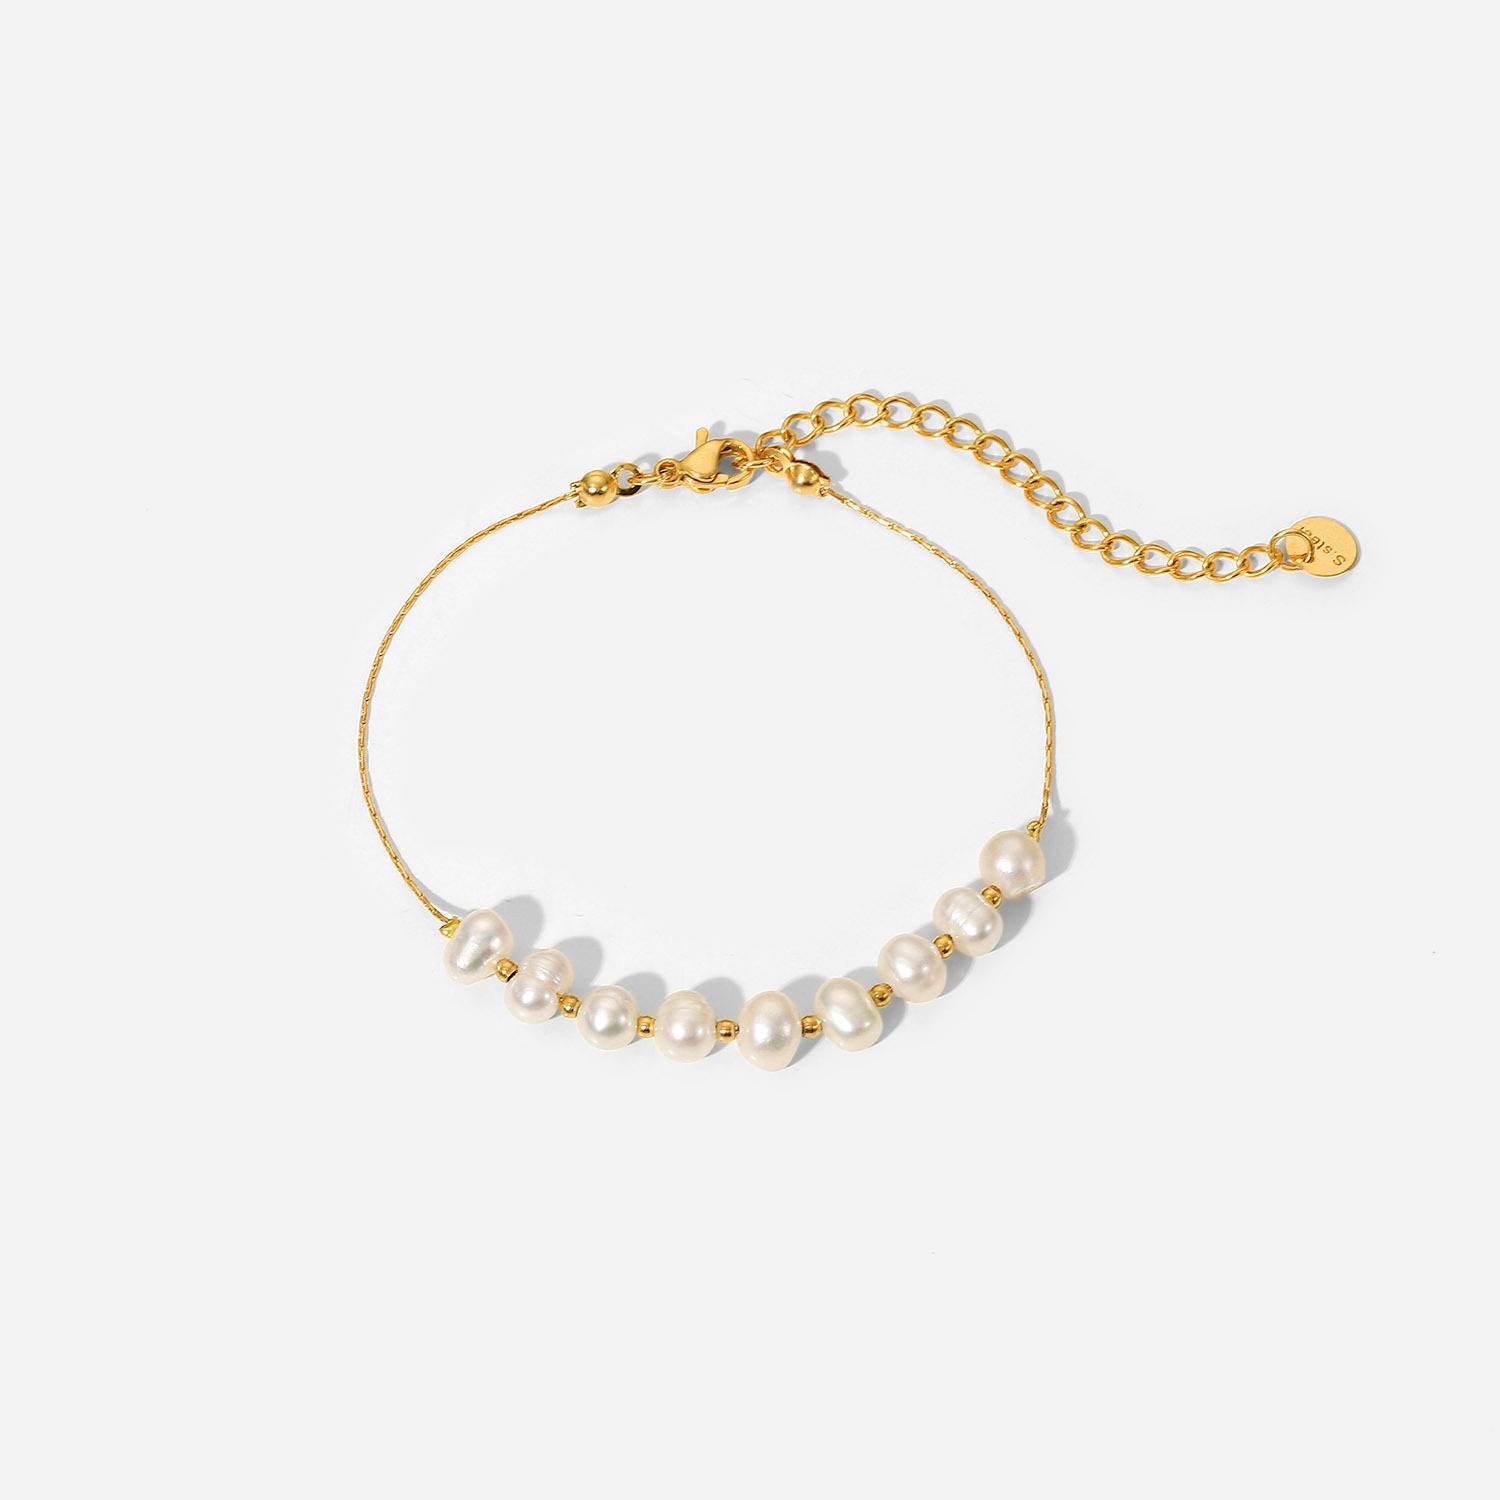 天然淡水珍珠不锈钢手链手镯首饰 女式礼物PVD电镀18k金链式手链